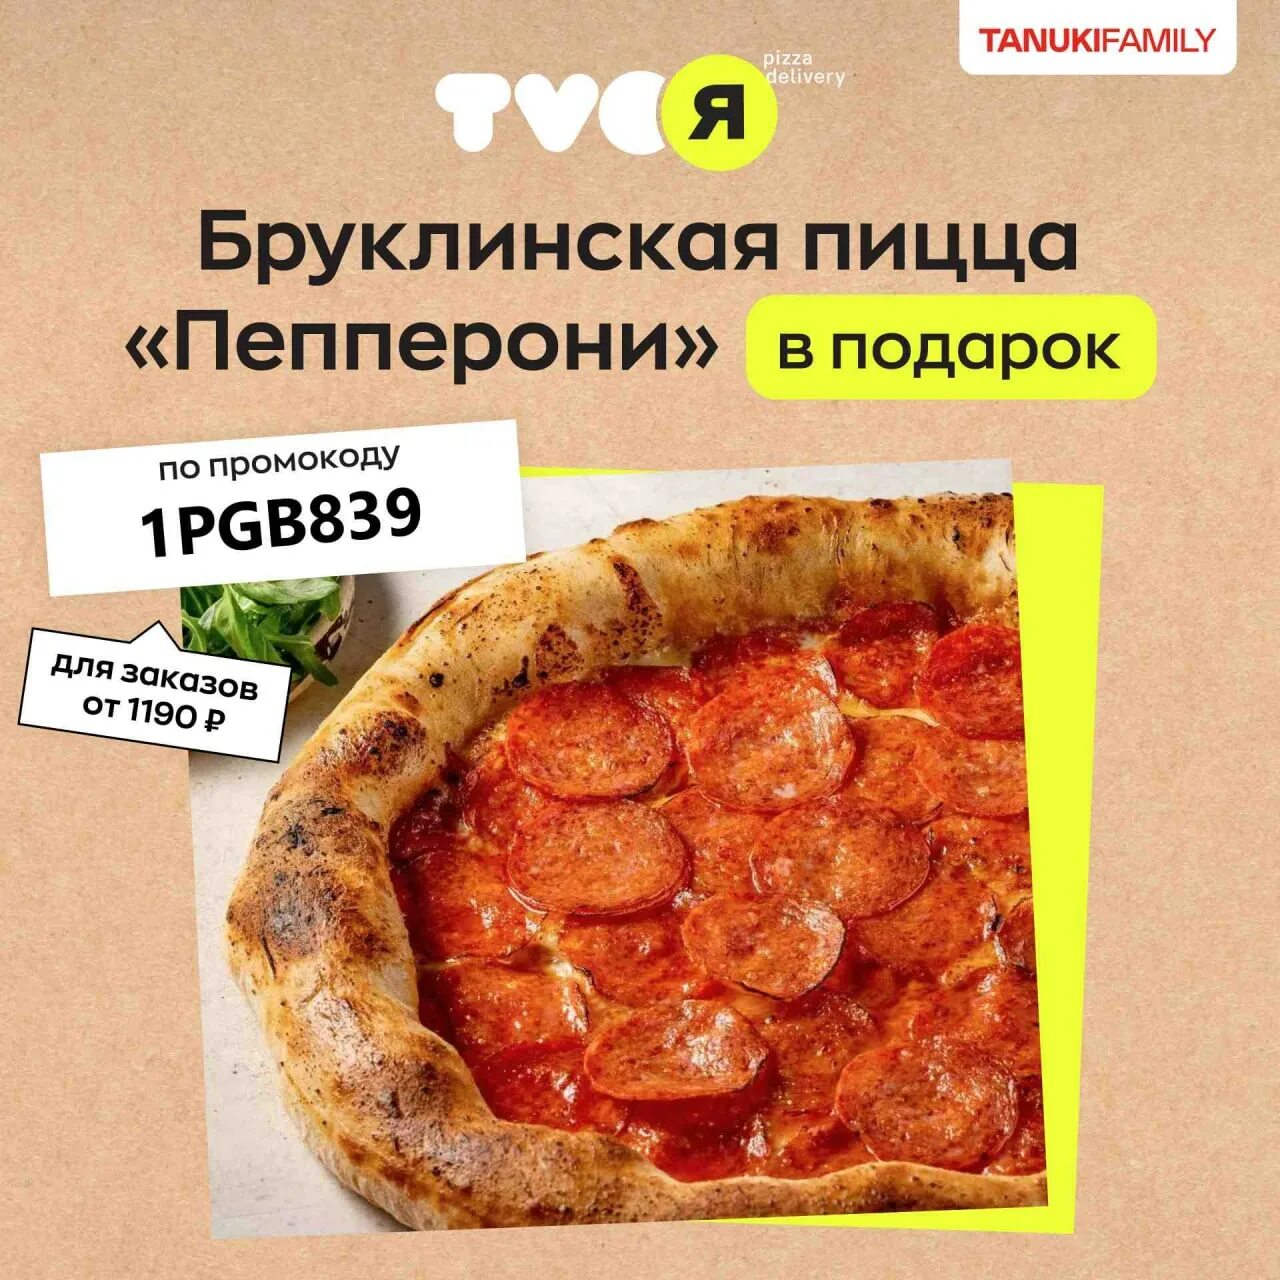 технологическая карта пицца пепперони фото 115